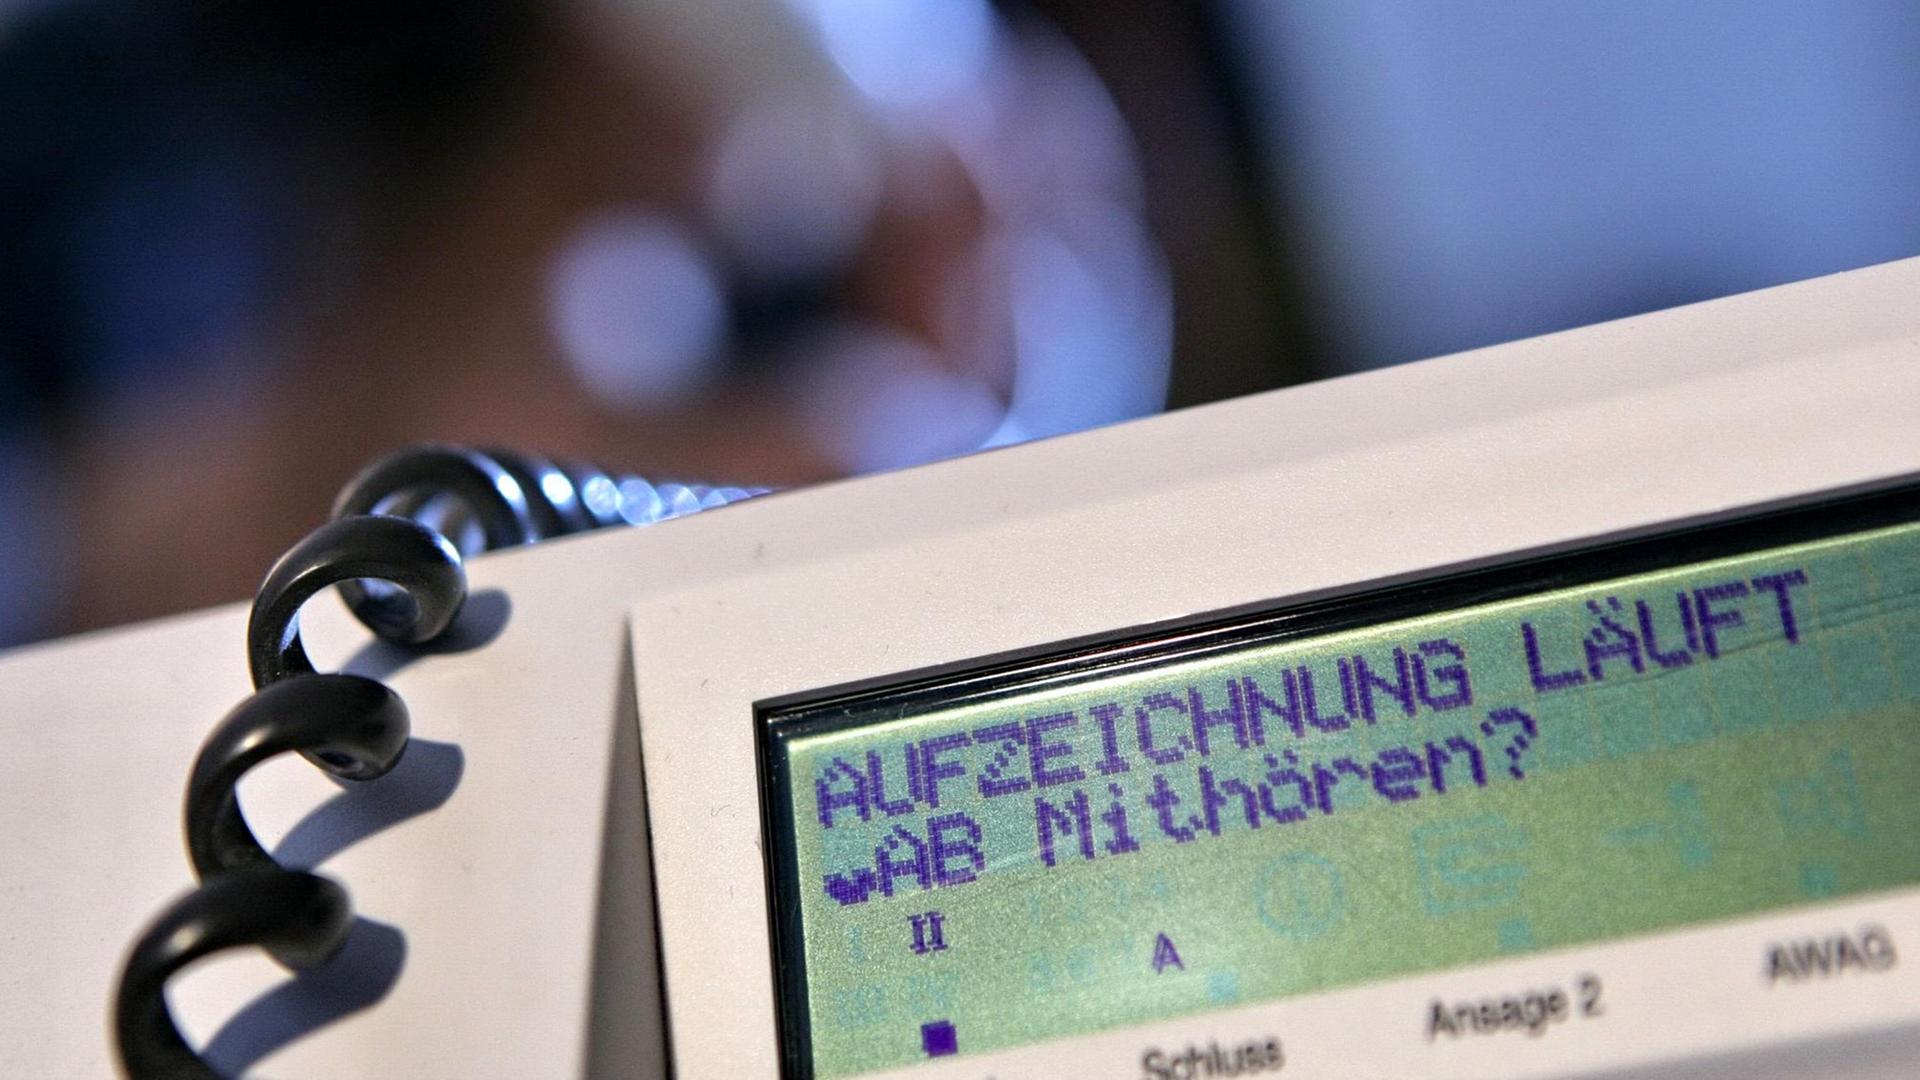 Während im Hintergrund eine Frau telefoniert, wird an einem Telefon der Deutschen Telekom der Schriftzug "Aufzeichnung läuft - Mithören?" angezeigt, aufgenommen am Samstag (31.05.2008) in Hamburg (gestellte Aufnahme - Illustration zum Thema Telefonüberwachung). Foto: Bodo Marks dpa/lno +++(c) dpa - Report+++ | Verwendung weltweit